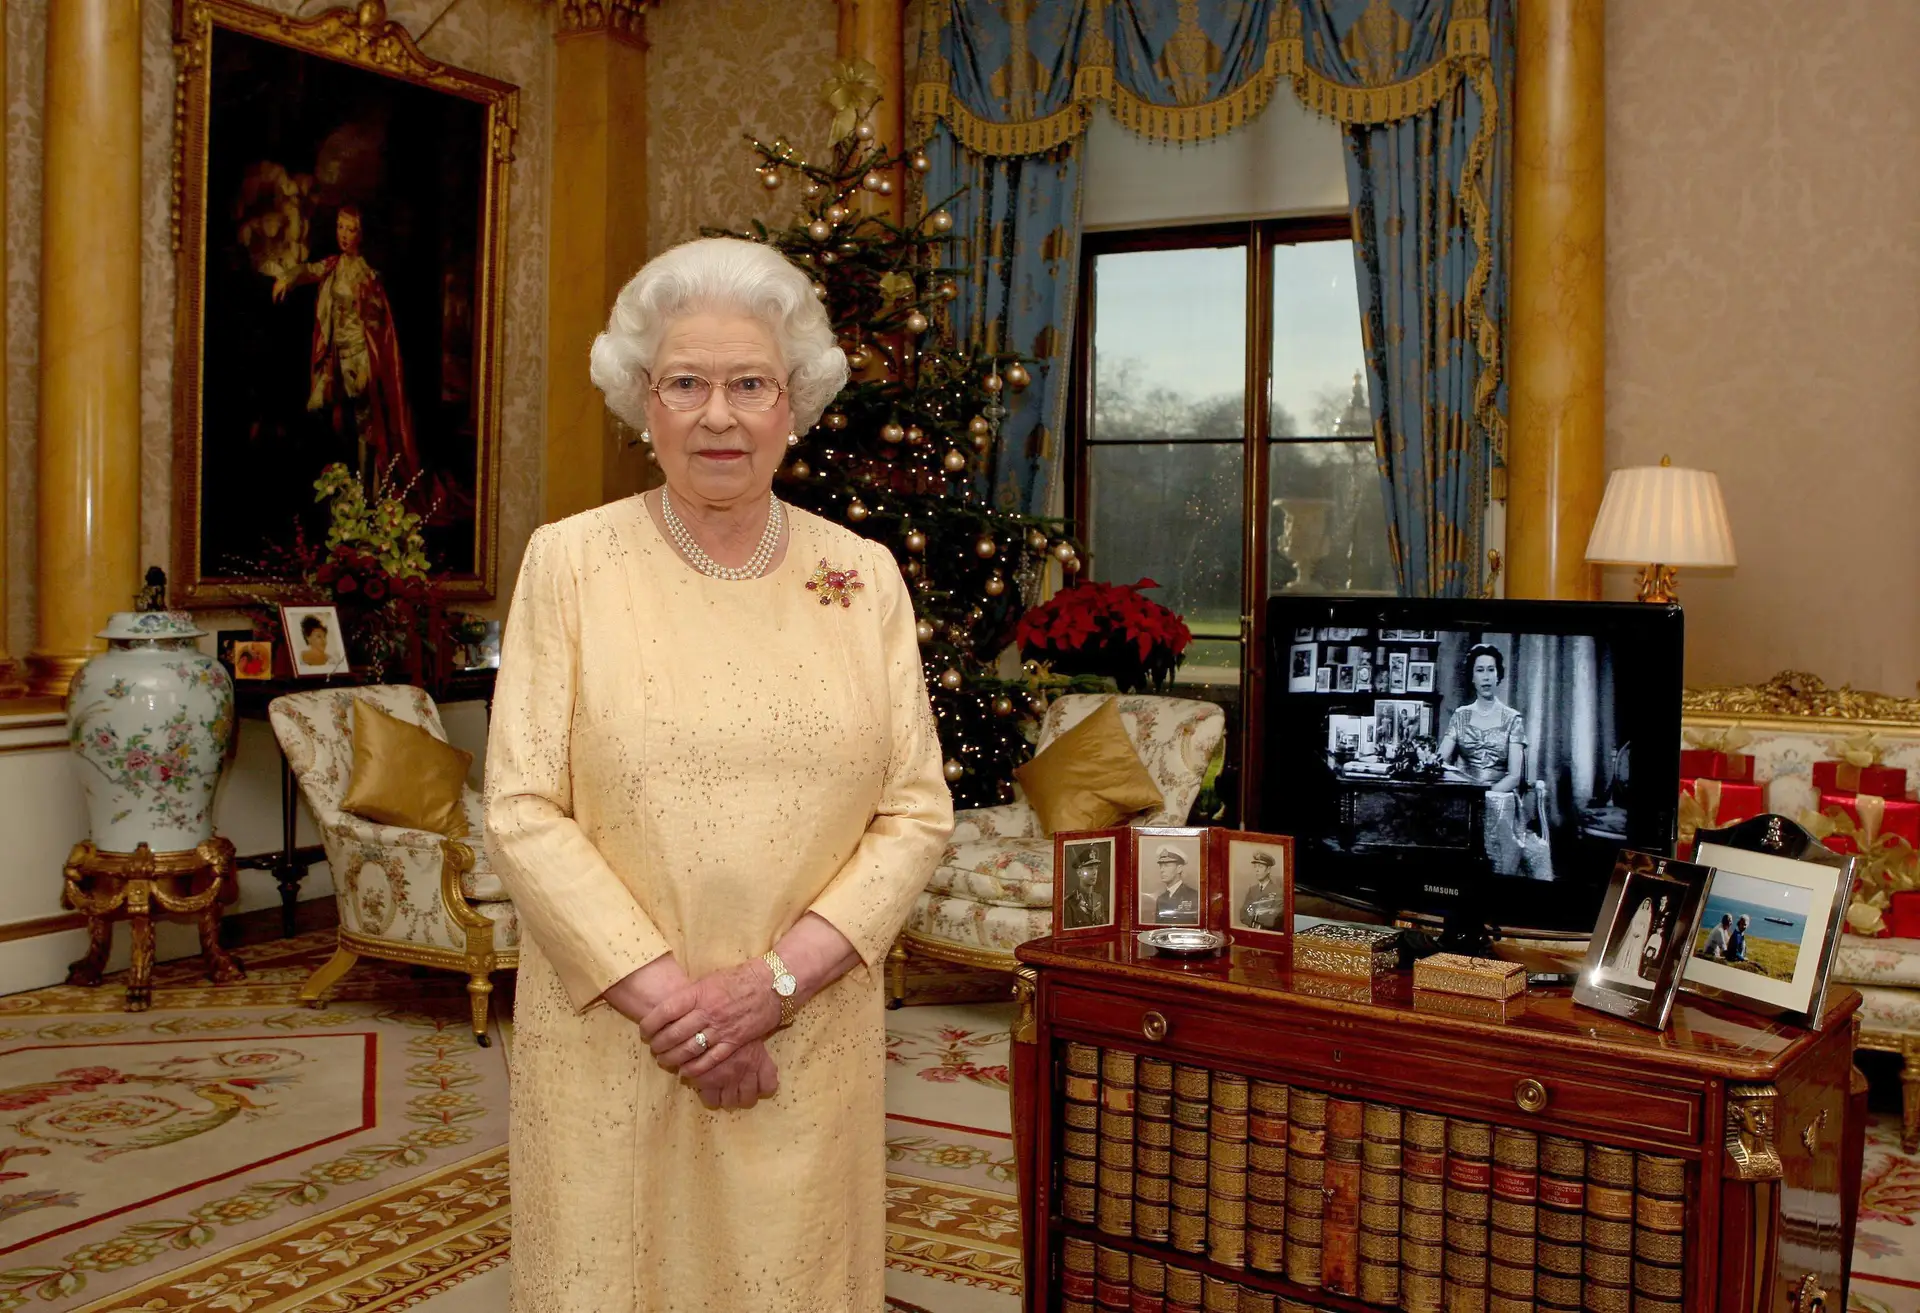 A Rainha Isabel II preferiu ver a série “Twin Peaks” do que ter Paul McCartney a tocar no seu aniversário